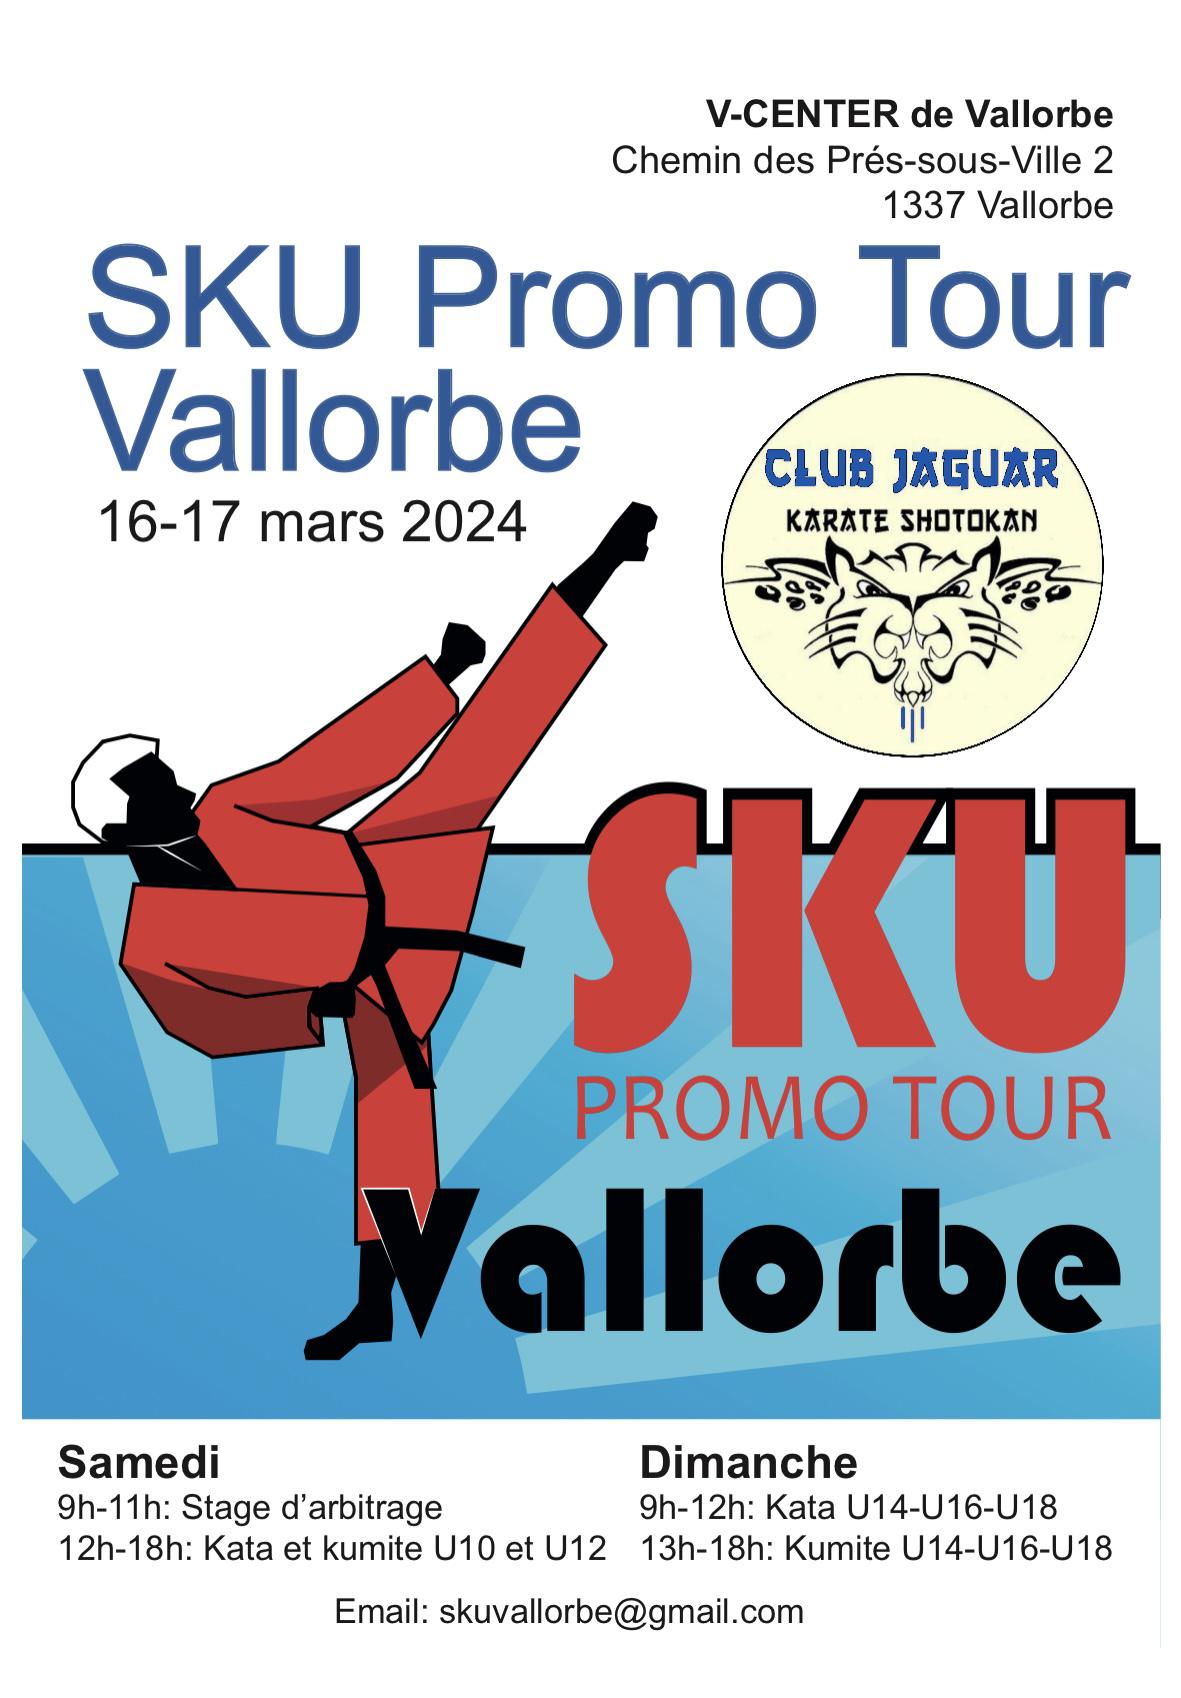 SKU PROMO TOUR VALLORBE 2024